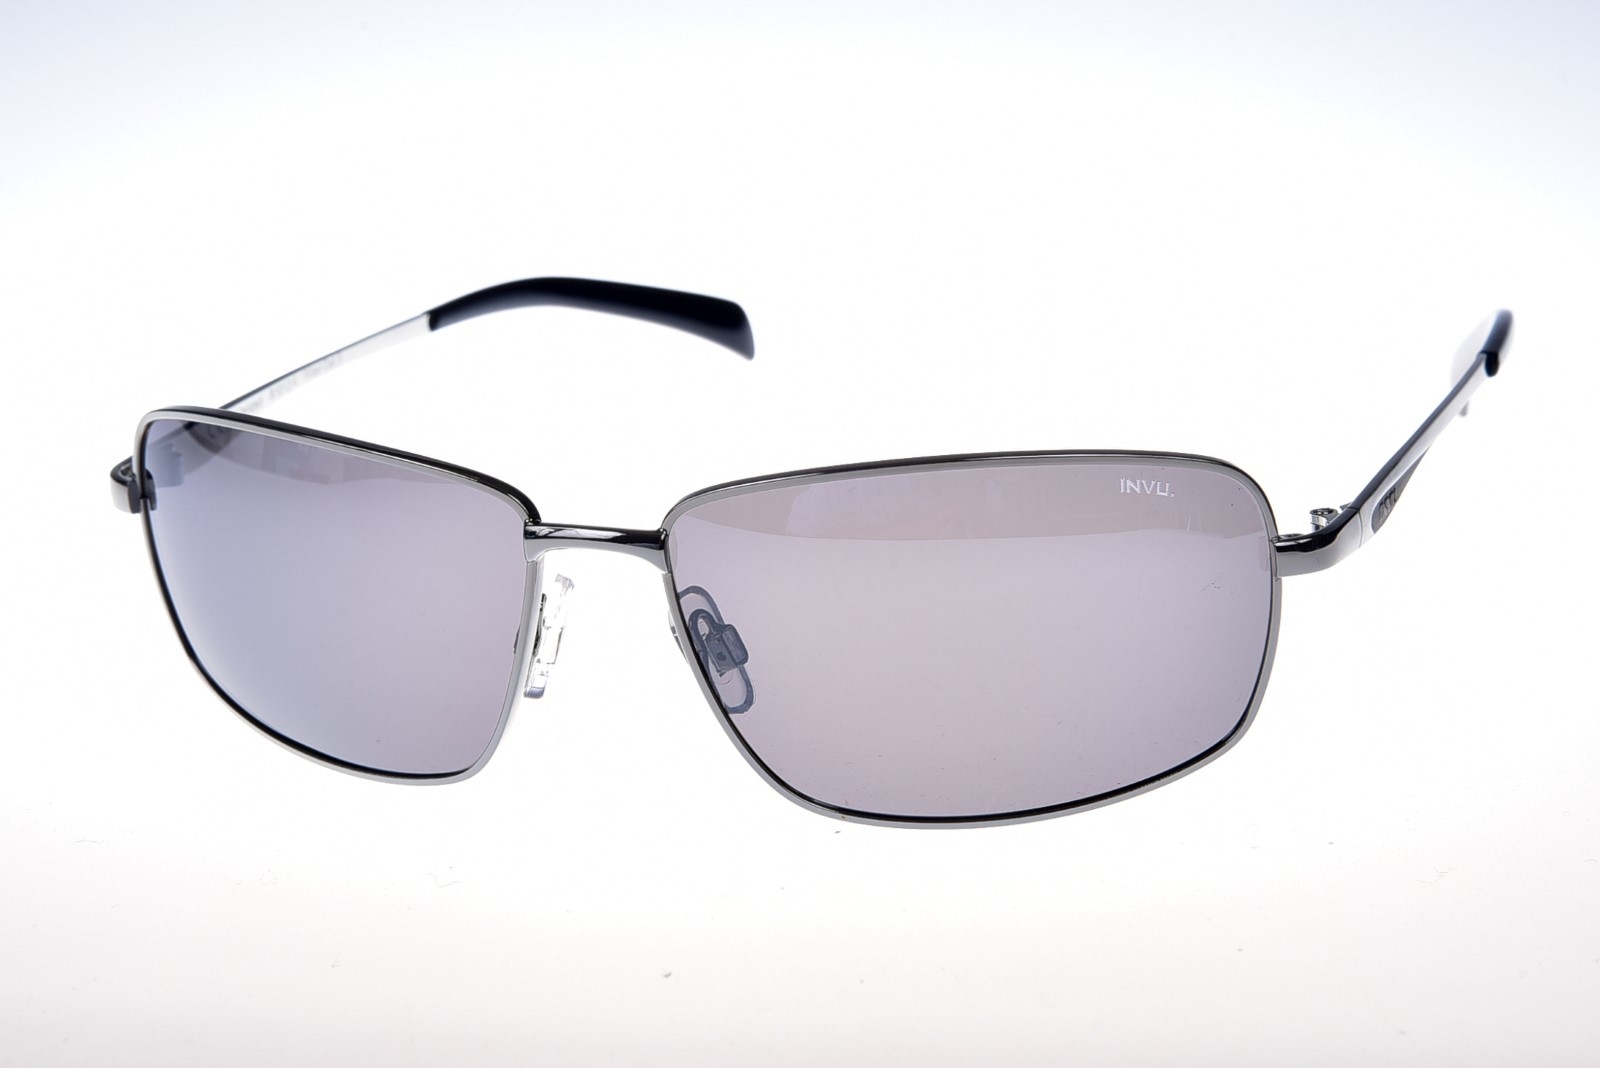 INVU. B1012A - Pánske slnečné okuliare